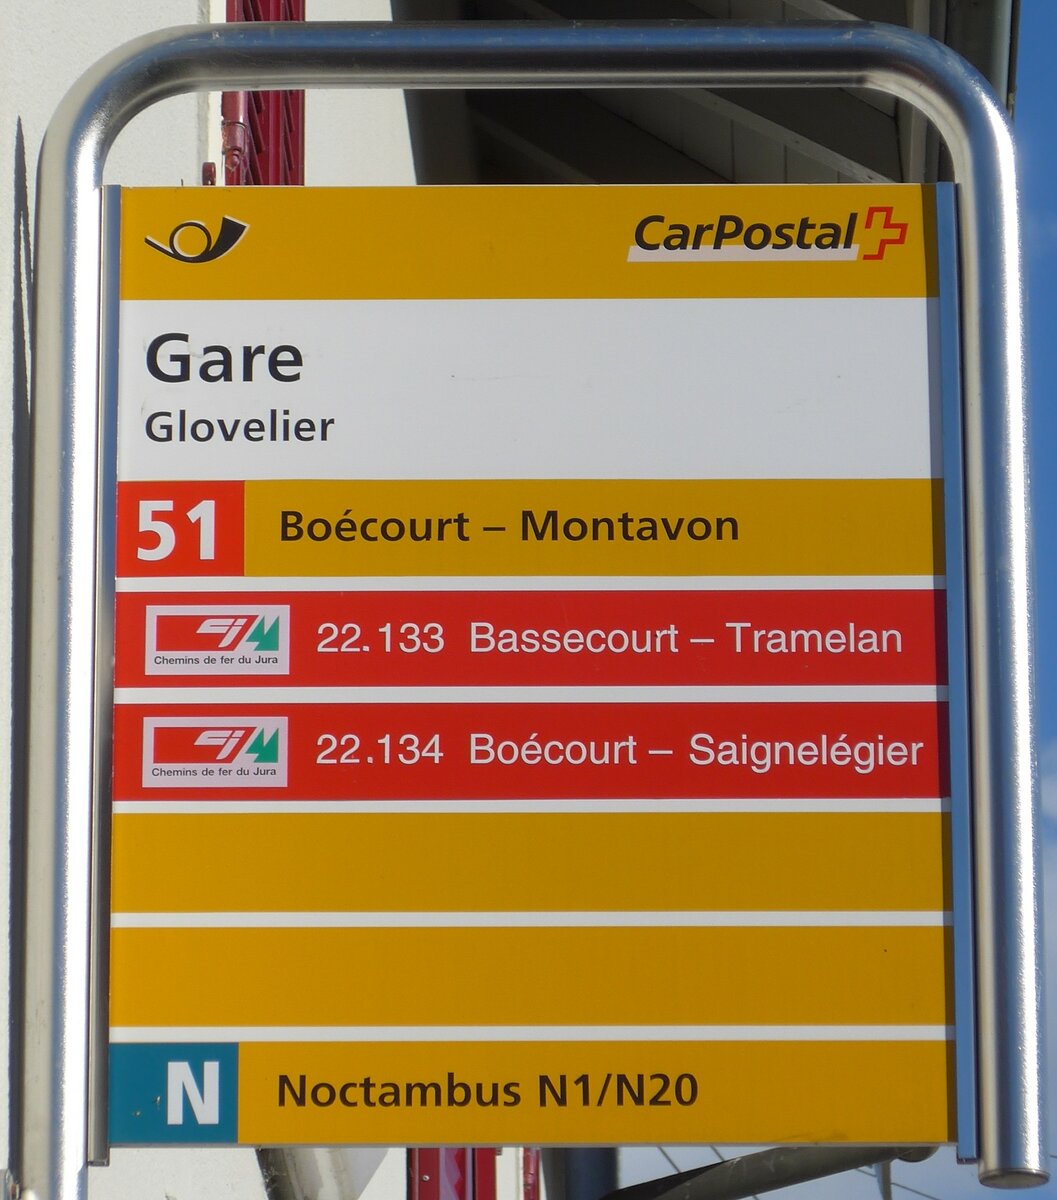 (175'392) - PostAuto/cj-Haltestellenschild - Glovelier, Gare - am 2. Oktober 2016